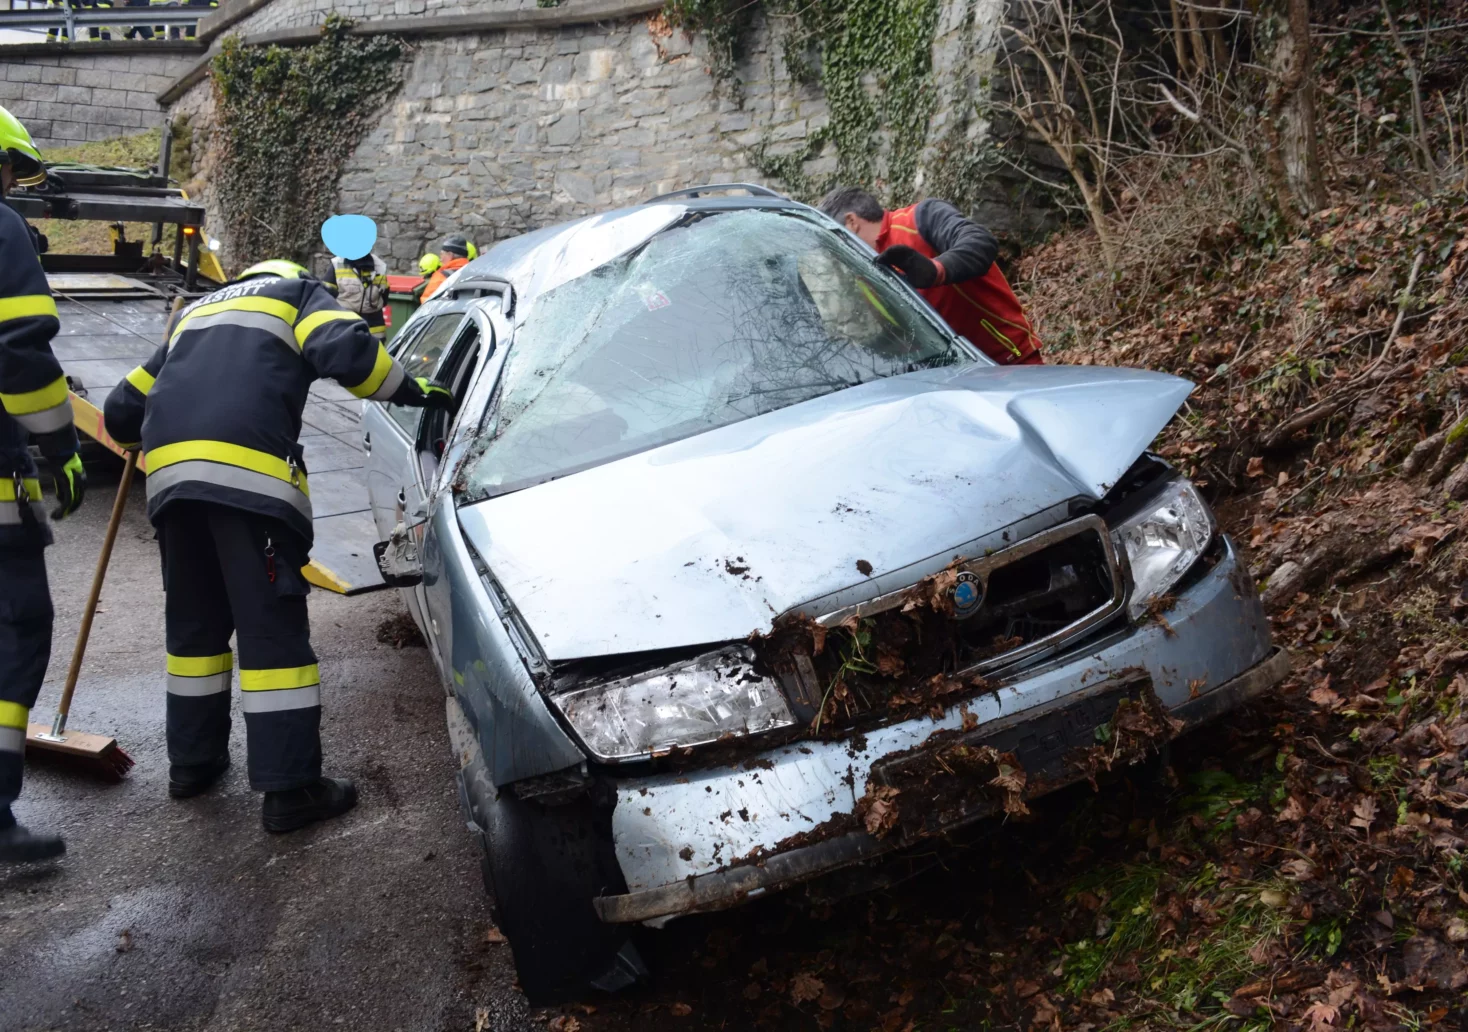 Foto in Beitrag von 5min.at: Zu sehen ist das kaputte Auto beim tödlichen Unfall in Kärnten.